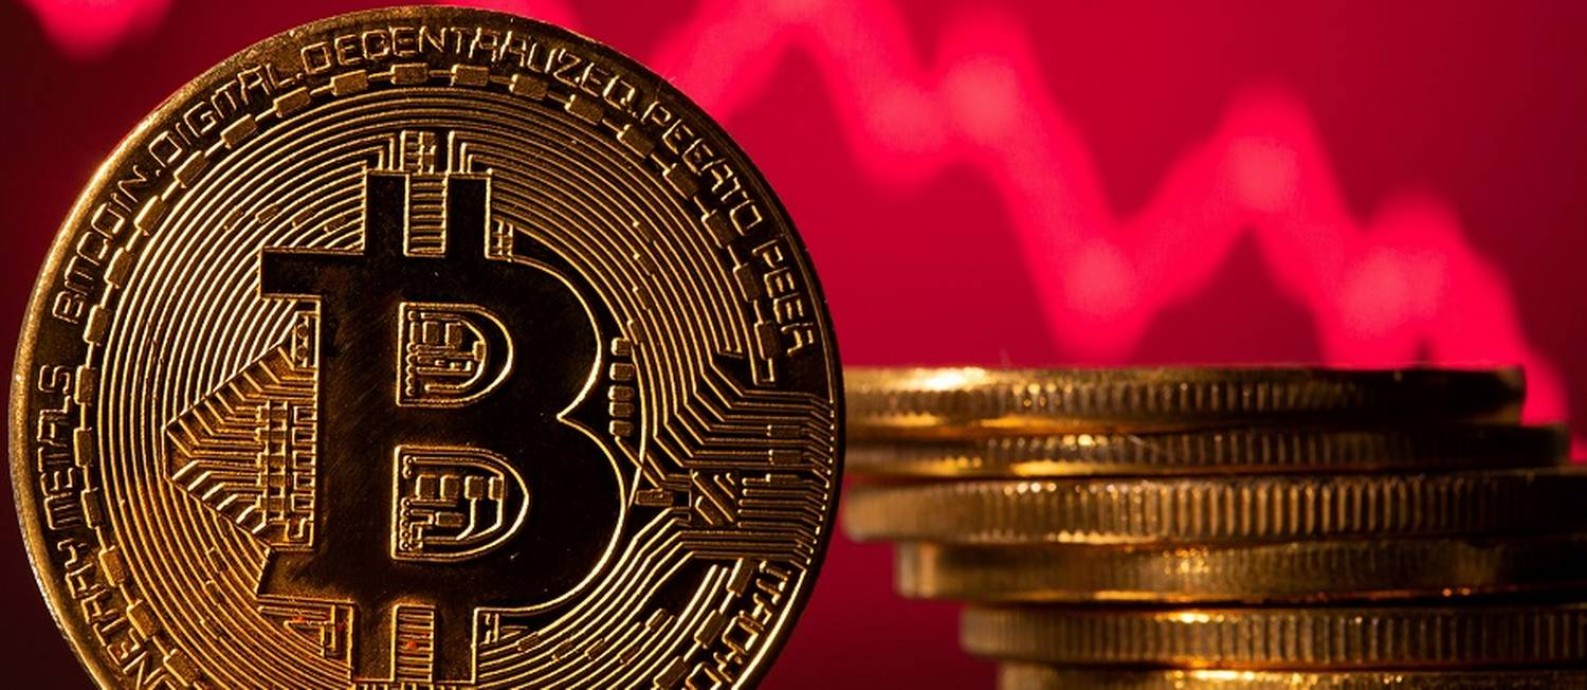 Bitcoin sobe 1,7% e volta a se aproximar da máxima do ano